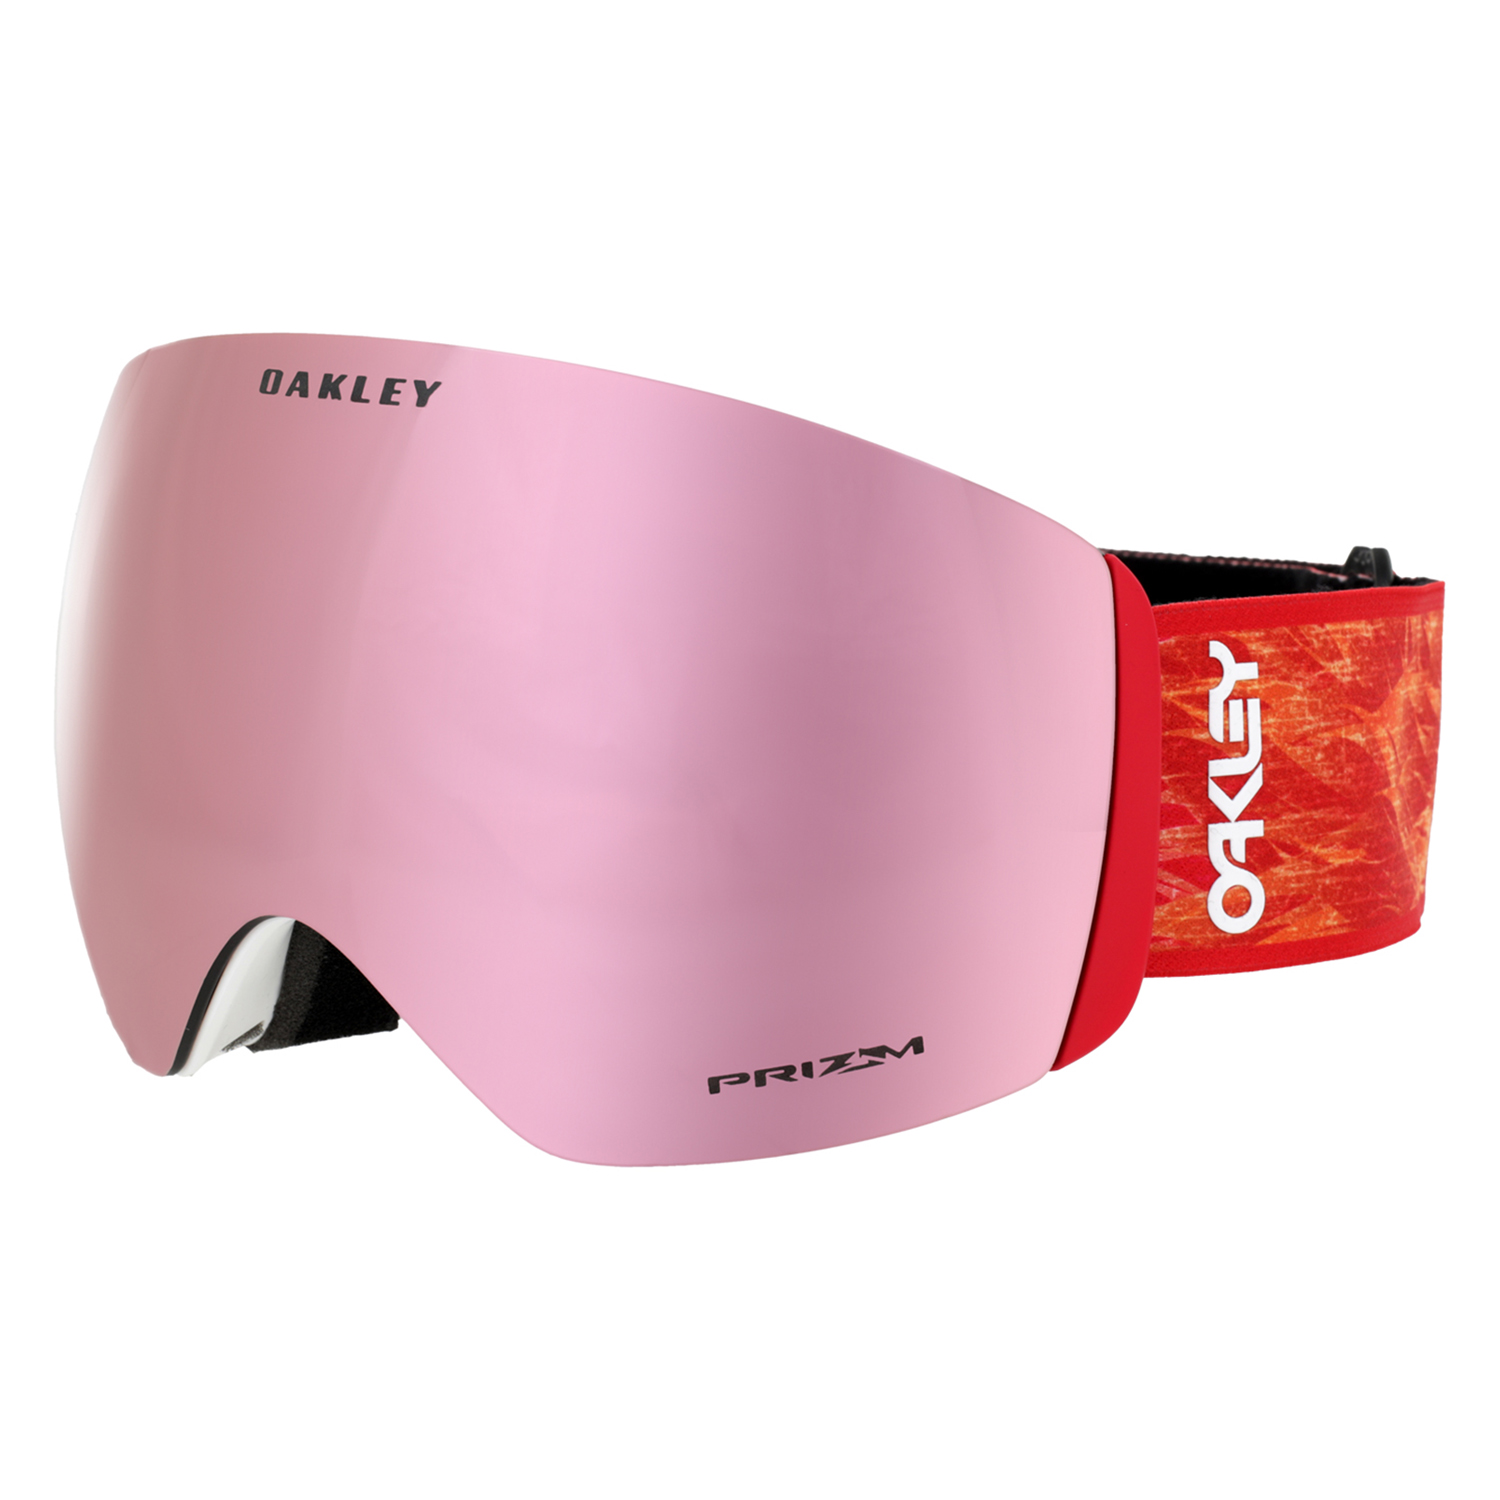 Очки горнолыжные Oakley Flight Deck L Red Blaze/Prizm Rose Gold Iridium S3